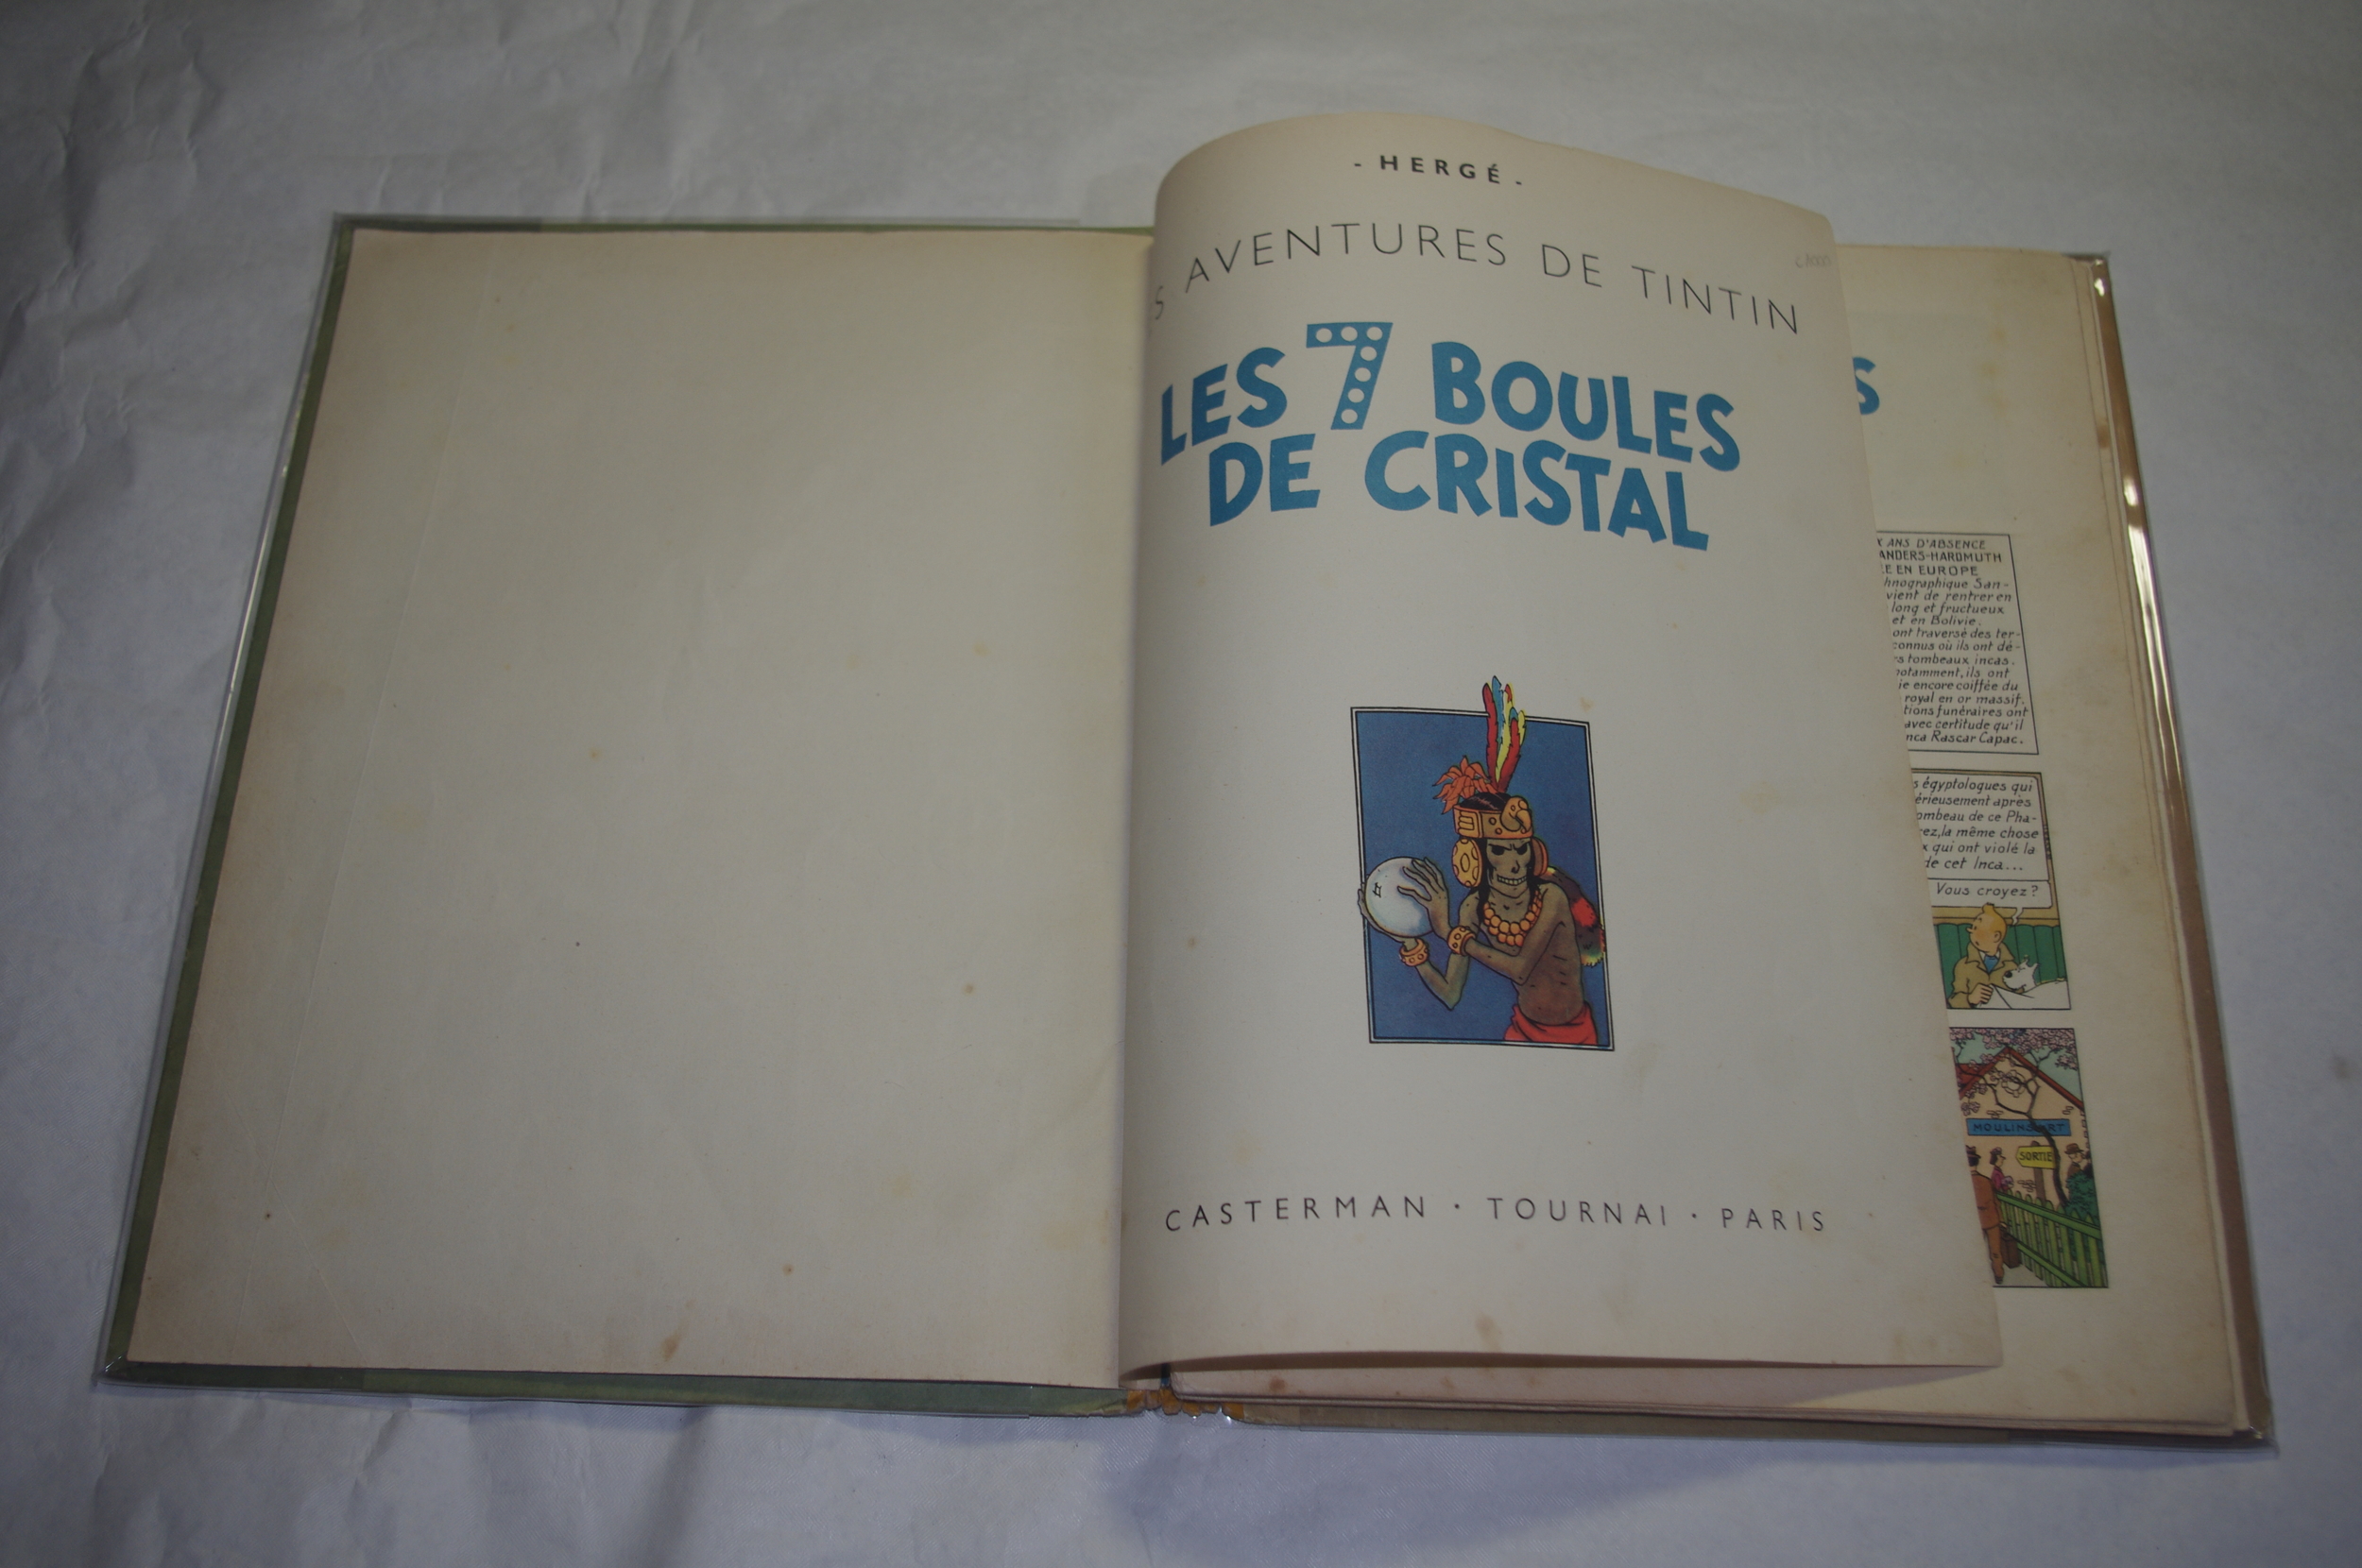 TINTIN SEPT BOULES DE CRISTAL 1948 B2-LEMASTERBROCKERS-BD-ORIGINAL-HERGE